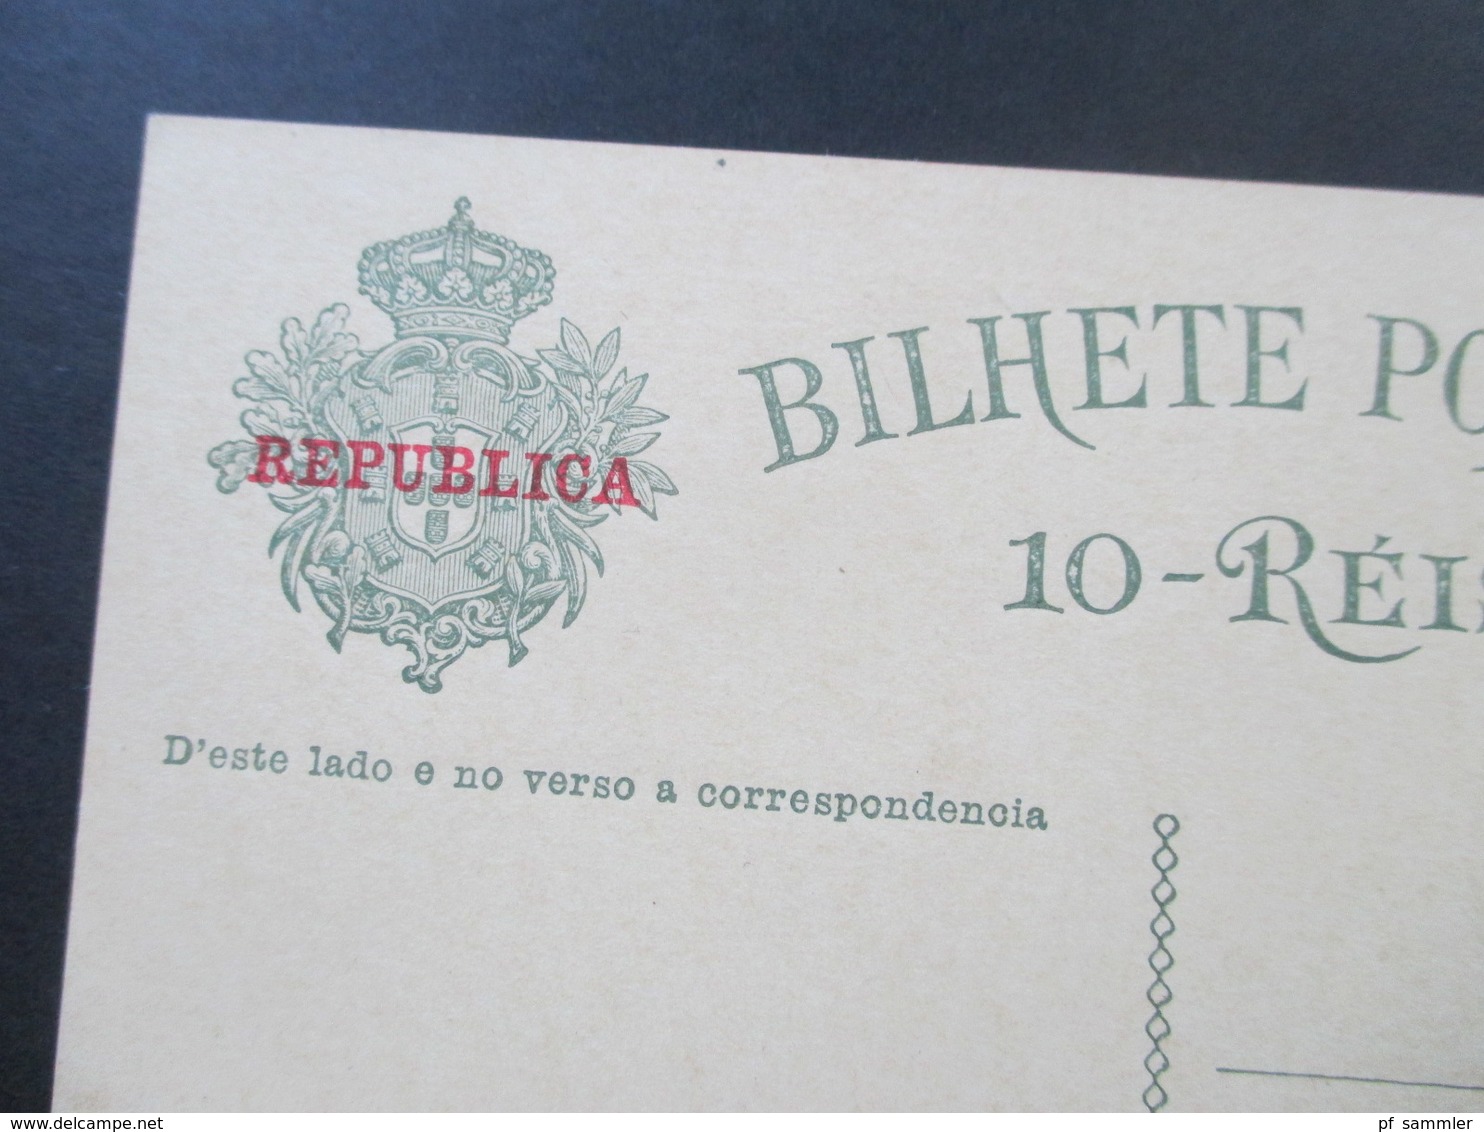 Portugal 1910 Ganzsache P 55 Roter Handstempelaufdruck Republica. Ungebraucht Und Guter Zustand! - Ganzsachen